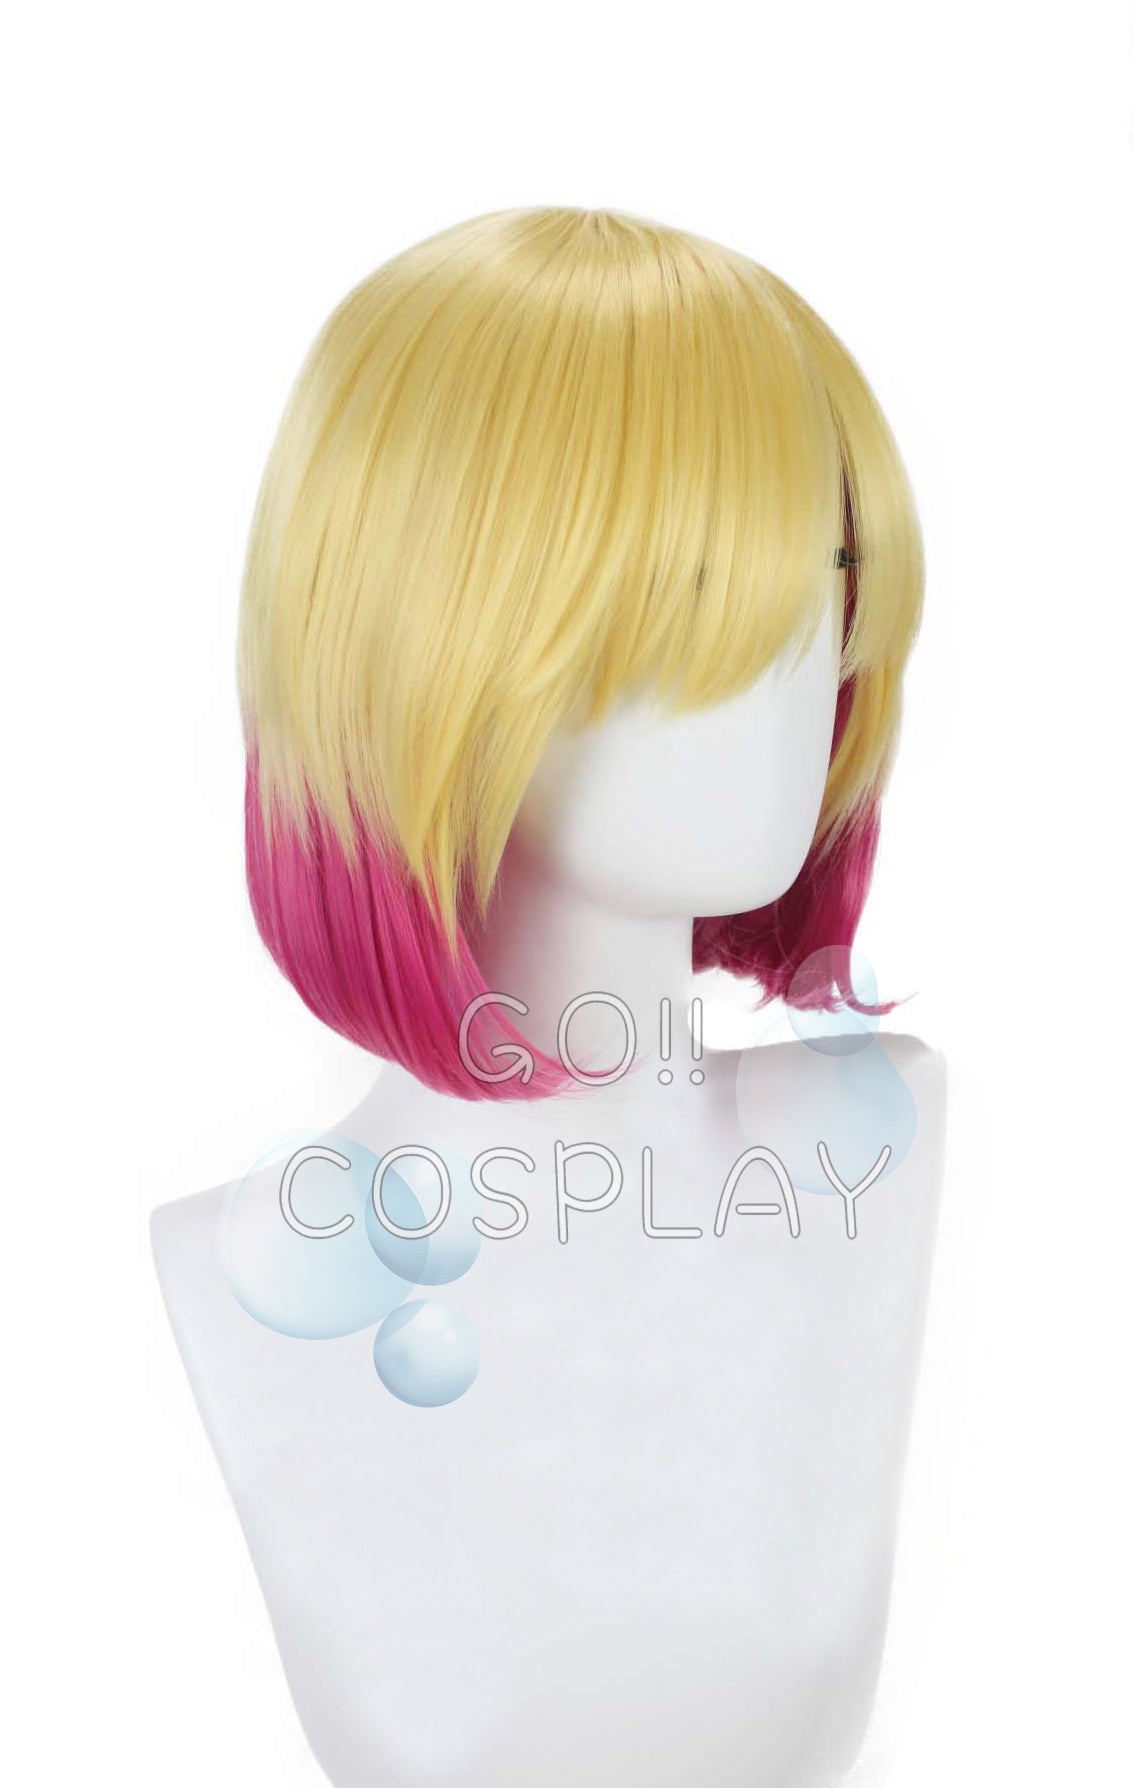 Gwenpool Cosplay Wig Buy